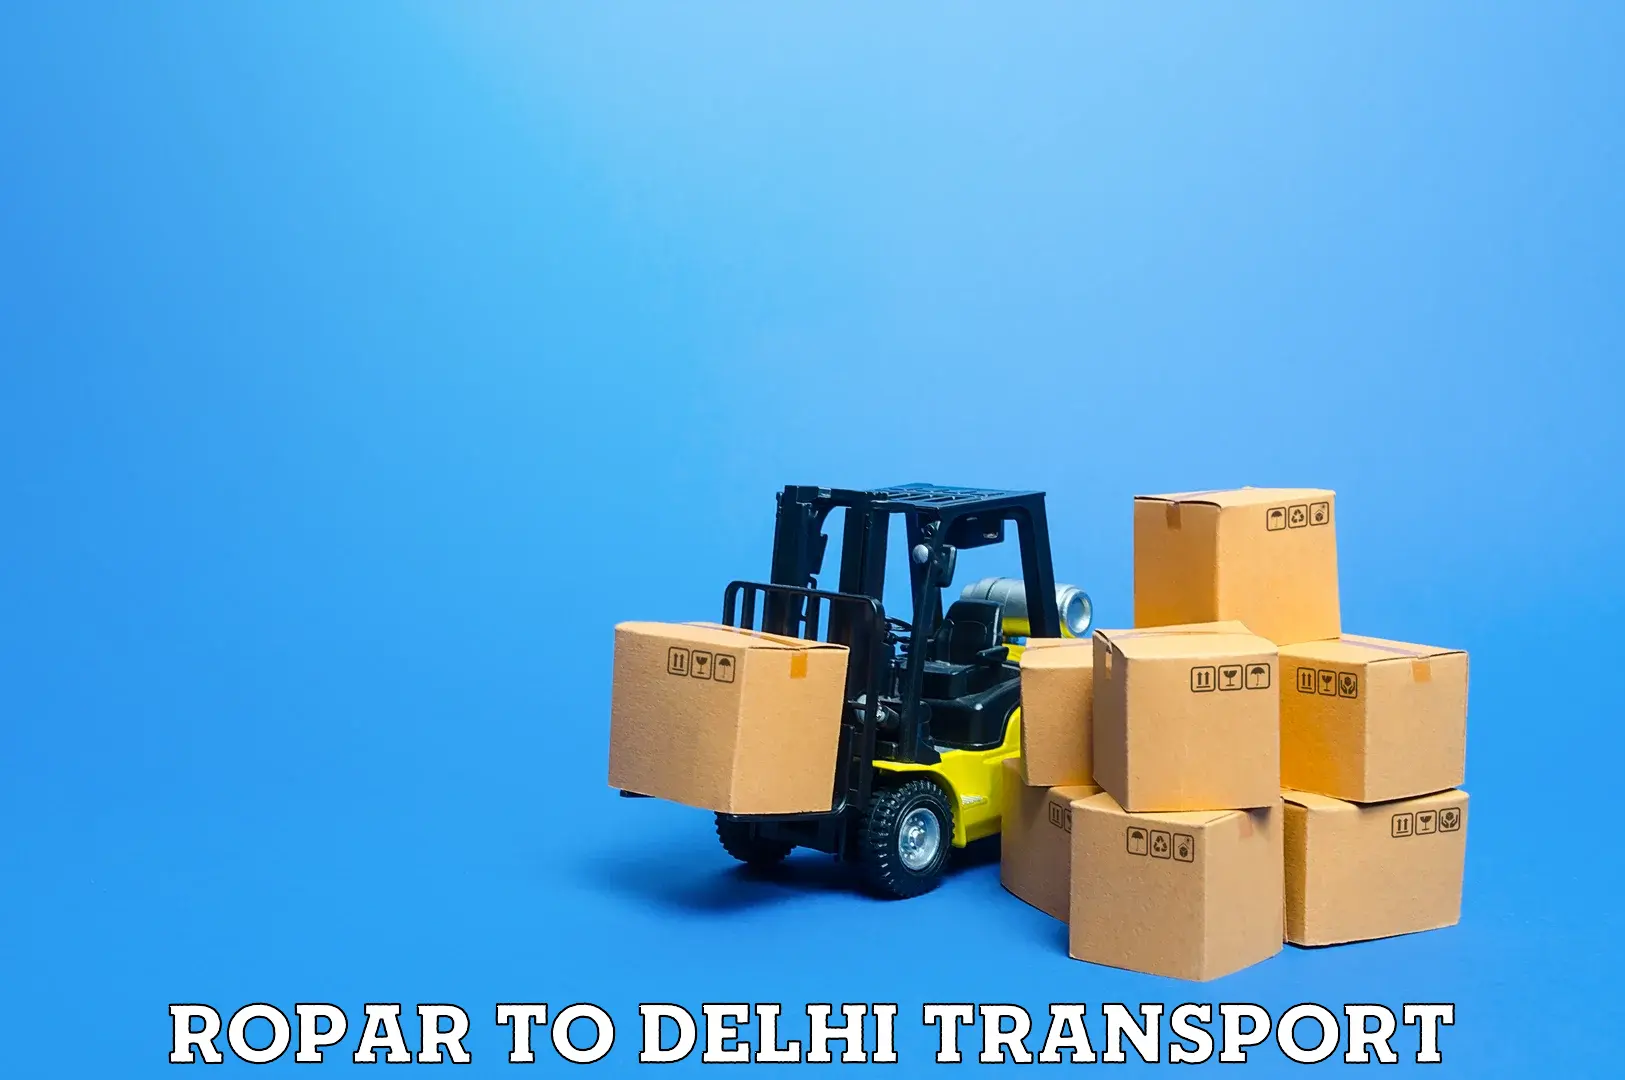 Bike transport service Ropar to Delhi Technological University DTU